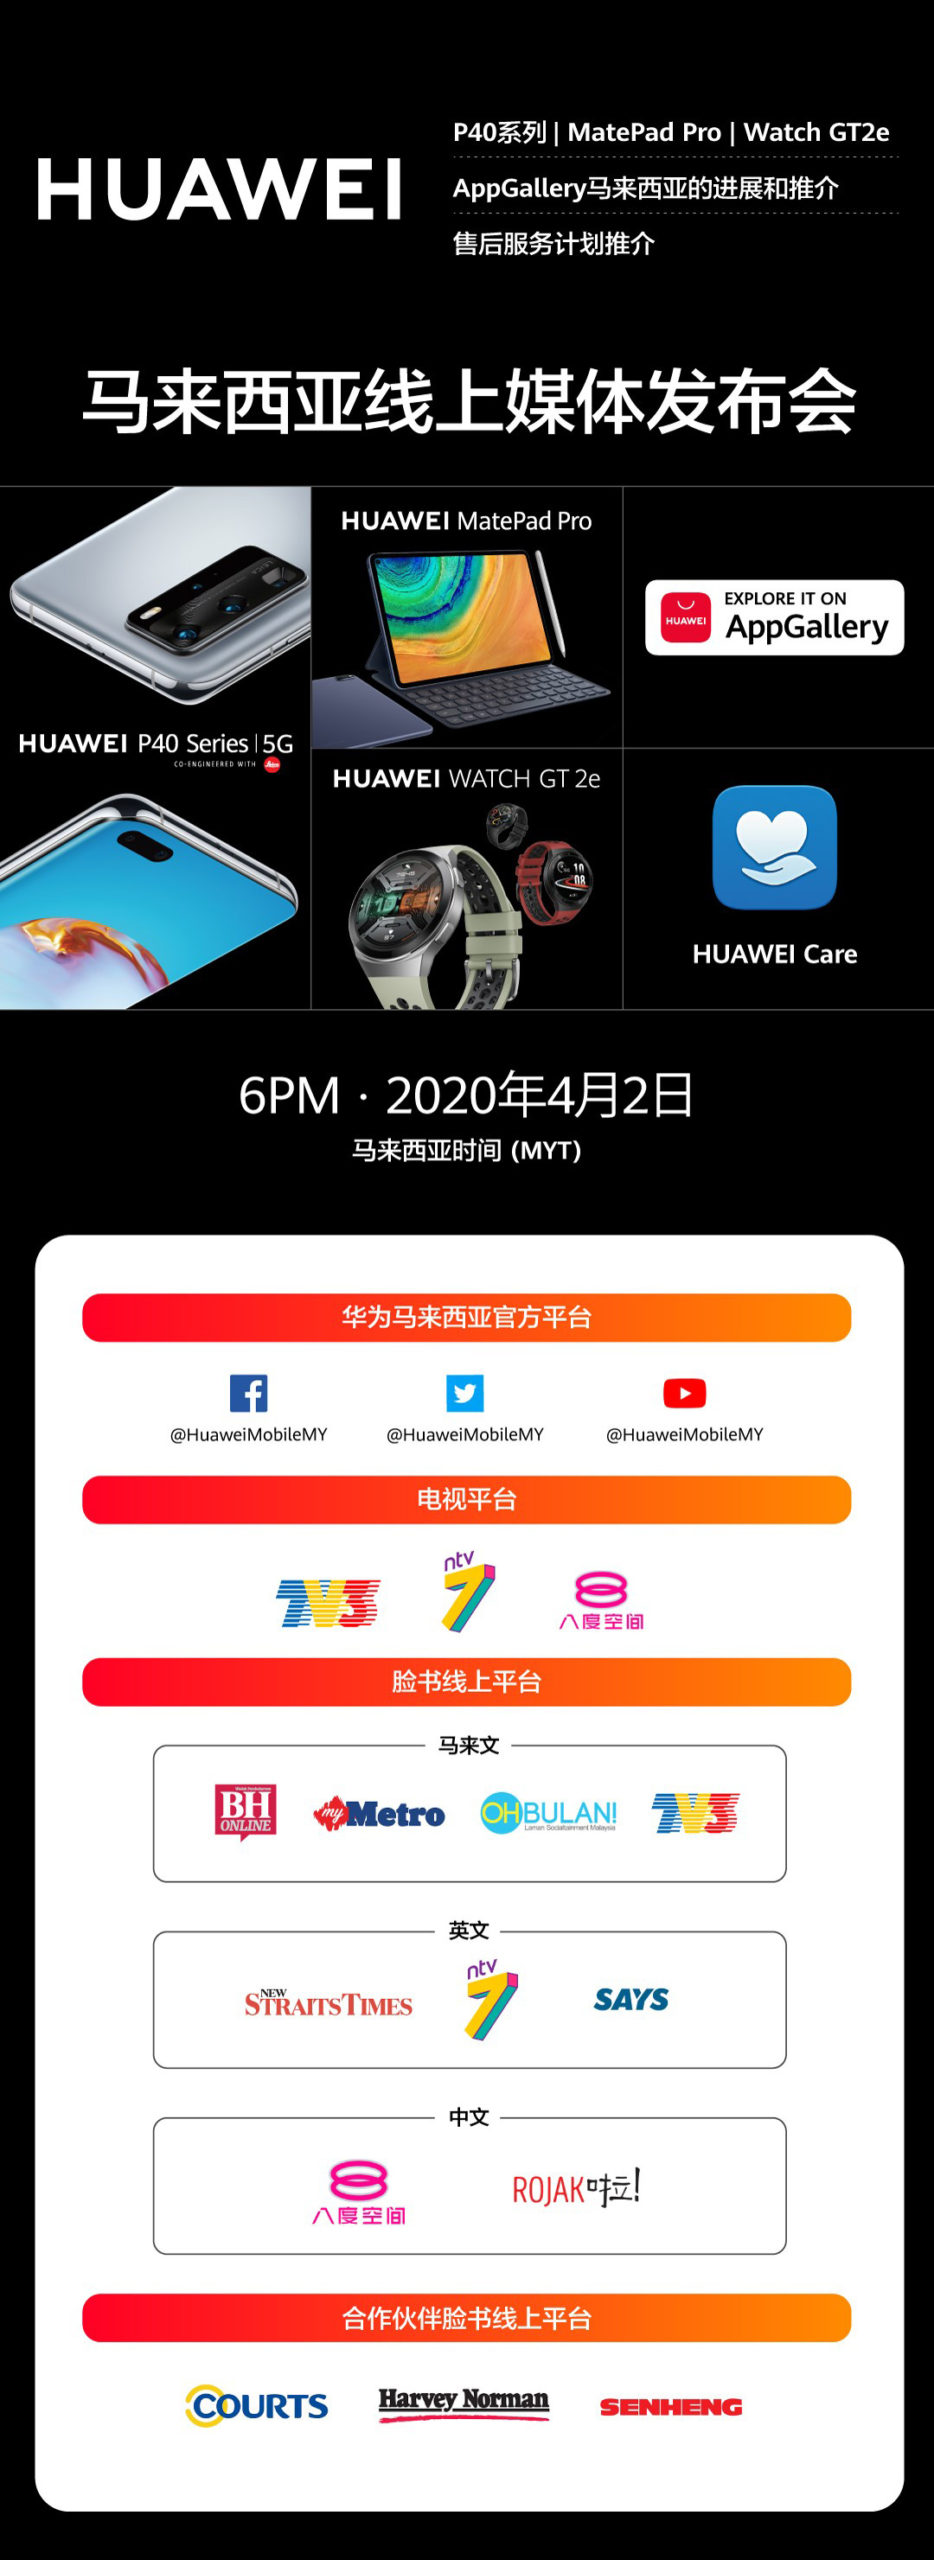 大马Huawei P40系列将在4月2日晚直播发布